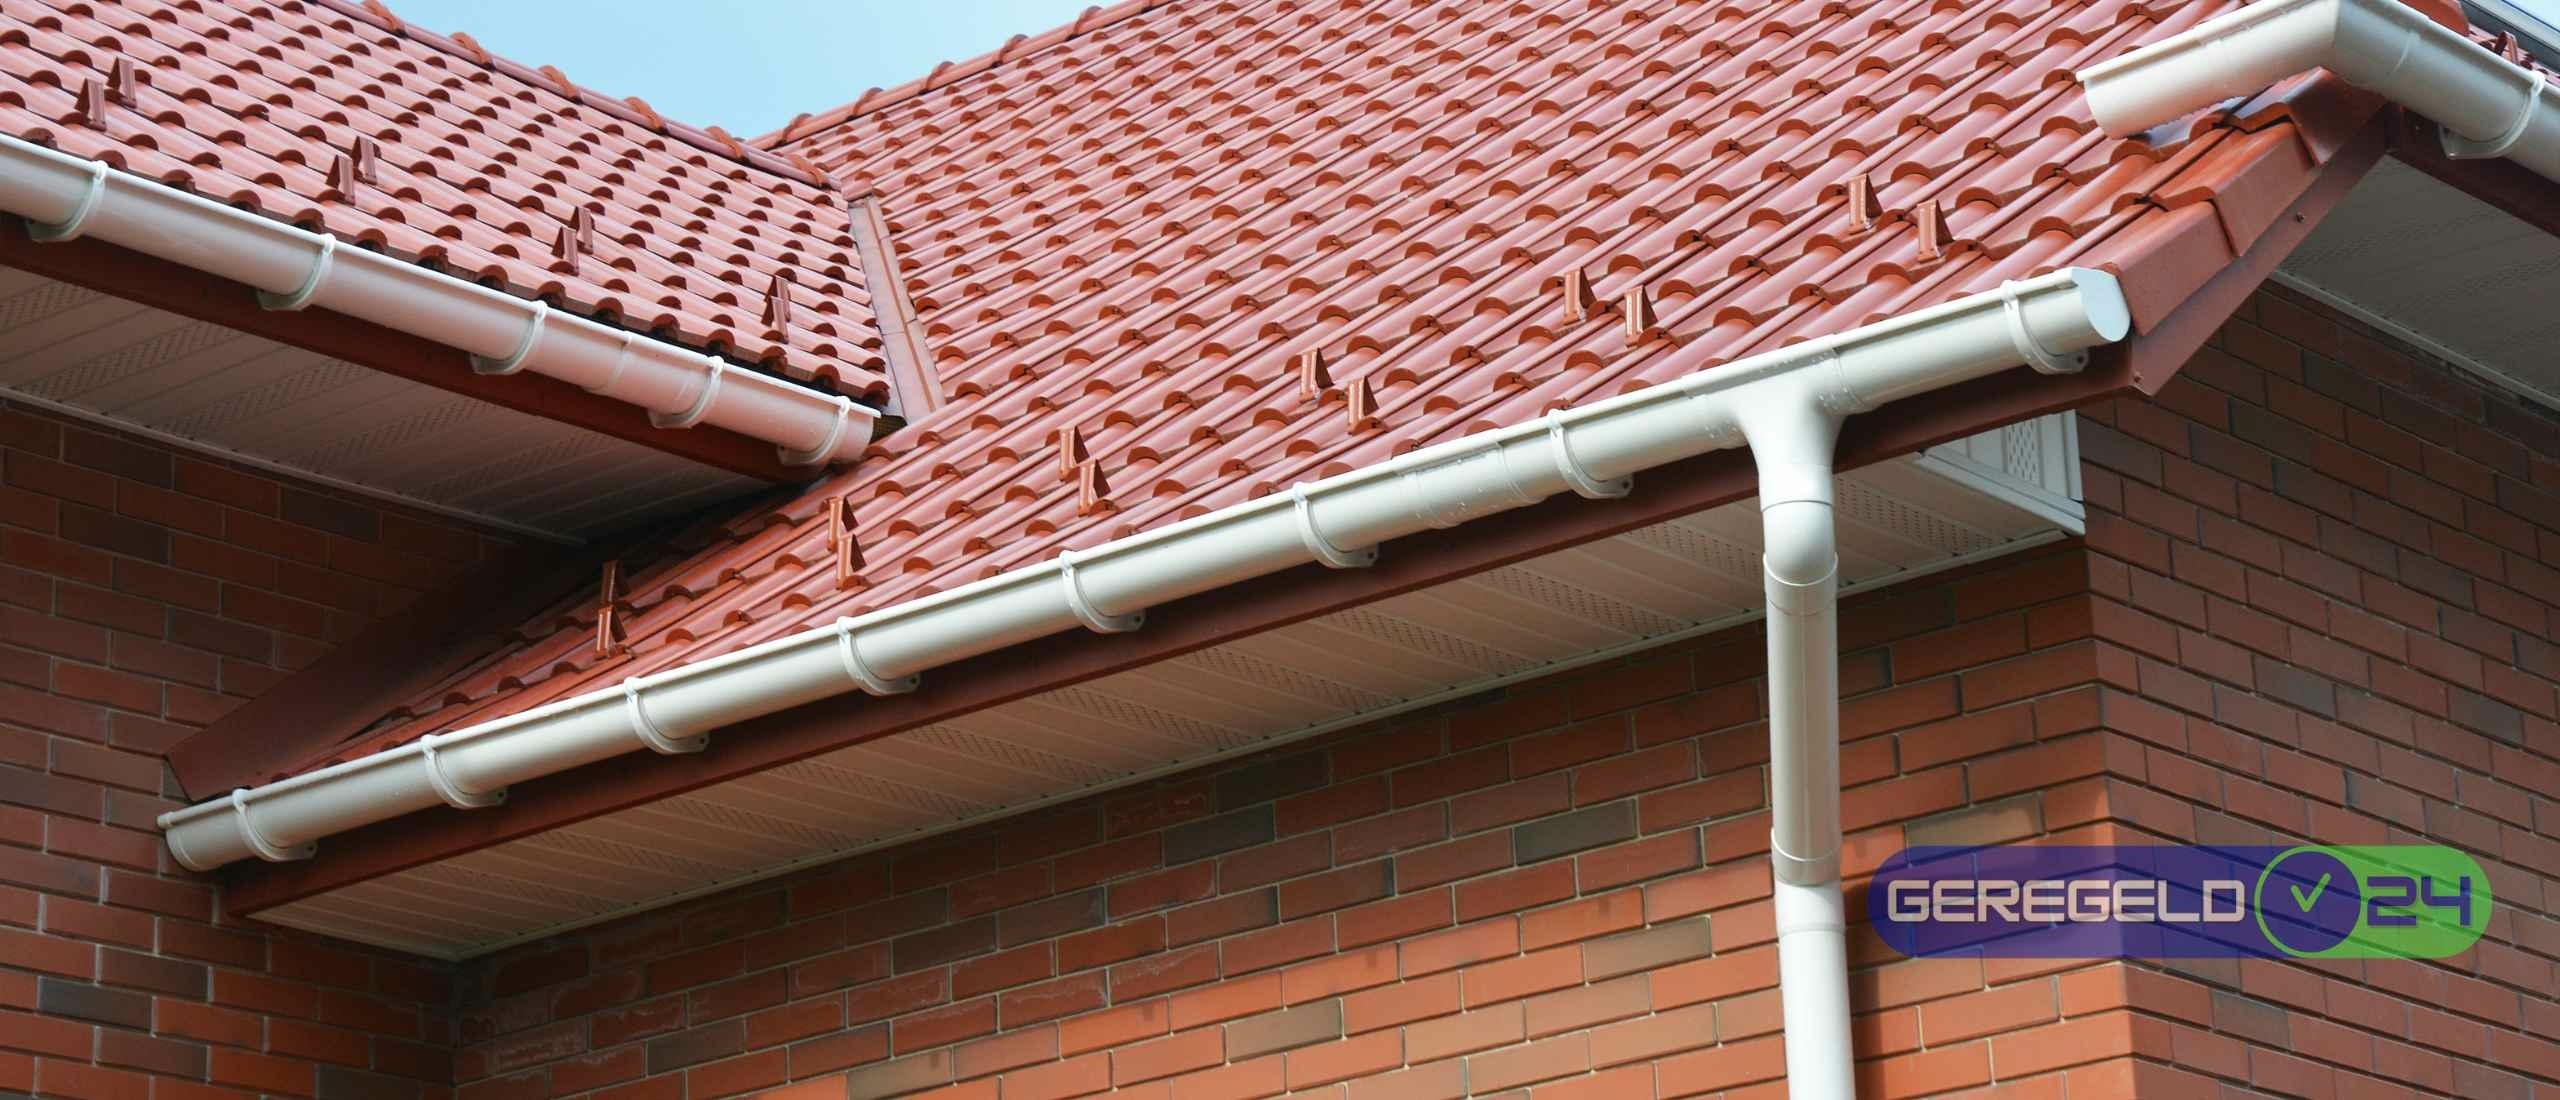 De beste tips voor het onderhouden van je dak en dakgoten